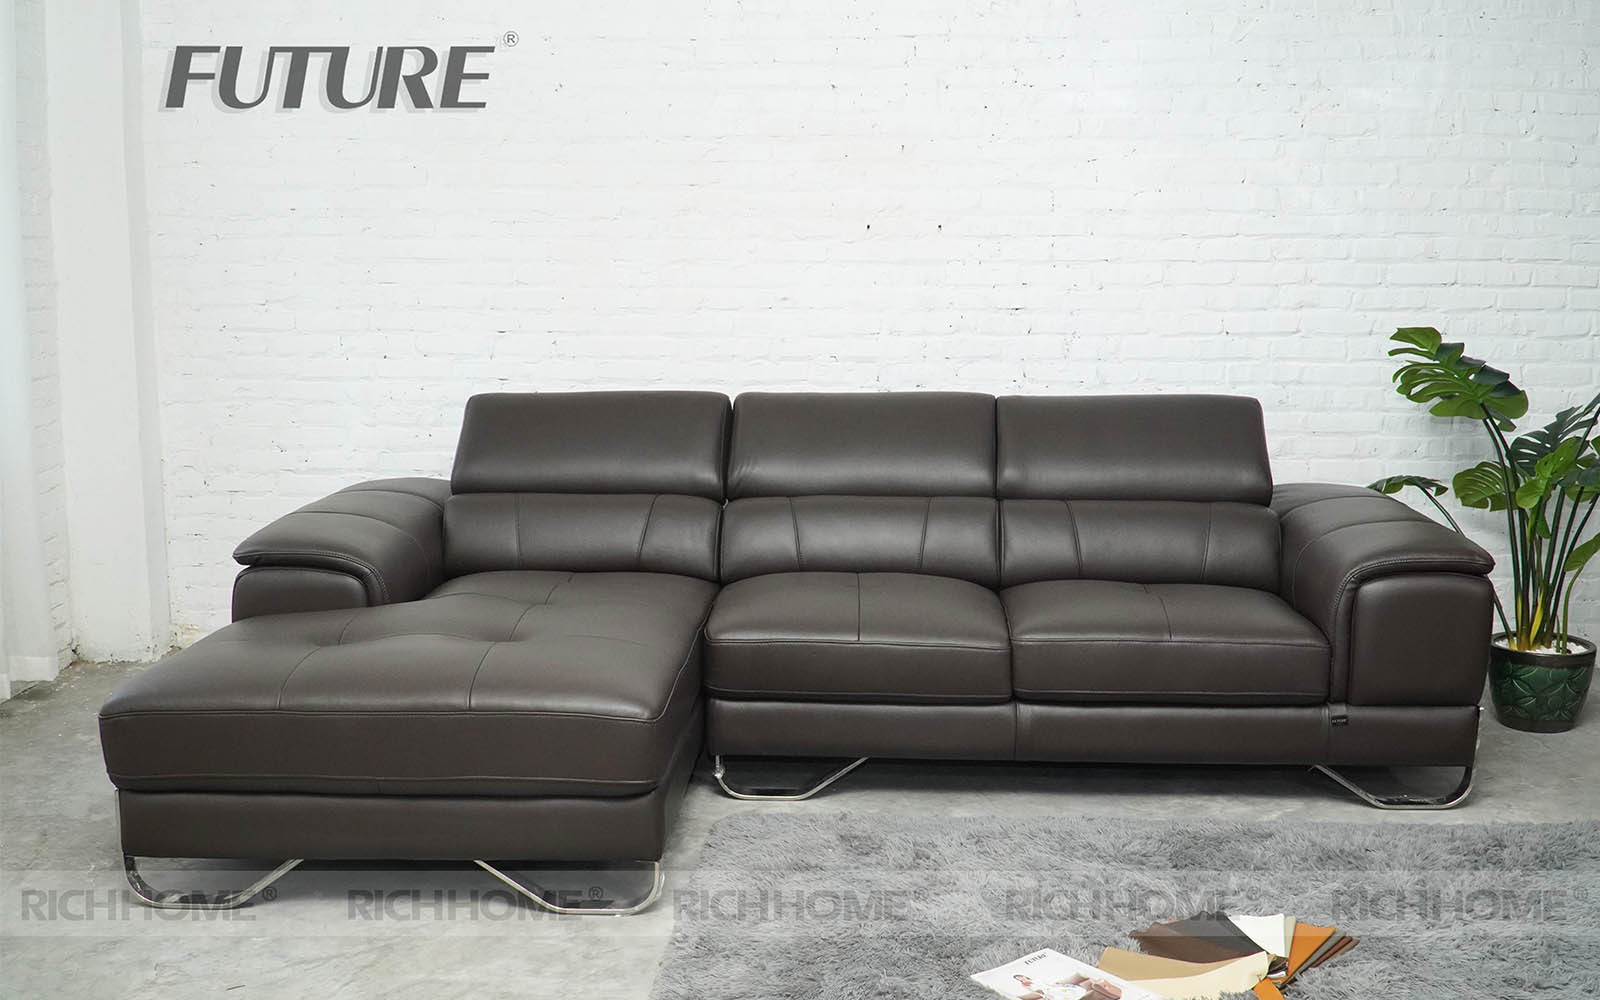 Tuyển tập các mẫu sofa màu đen thiết kế tinh tế và sang trọng nhất - Ảnh 6